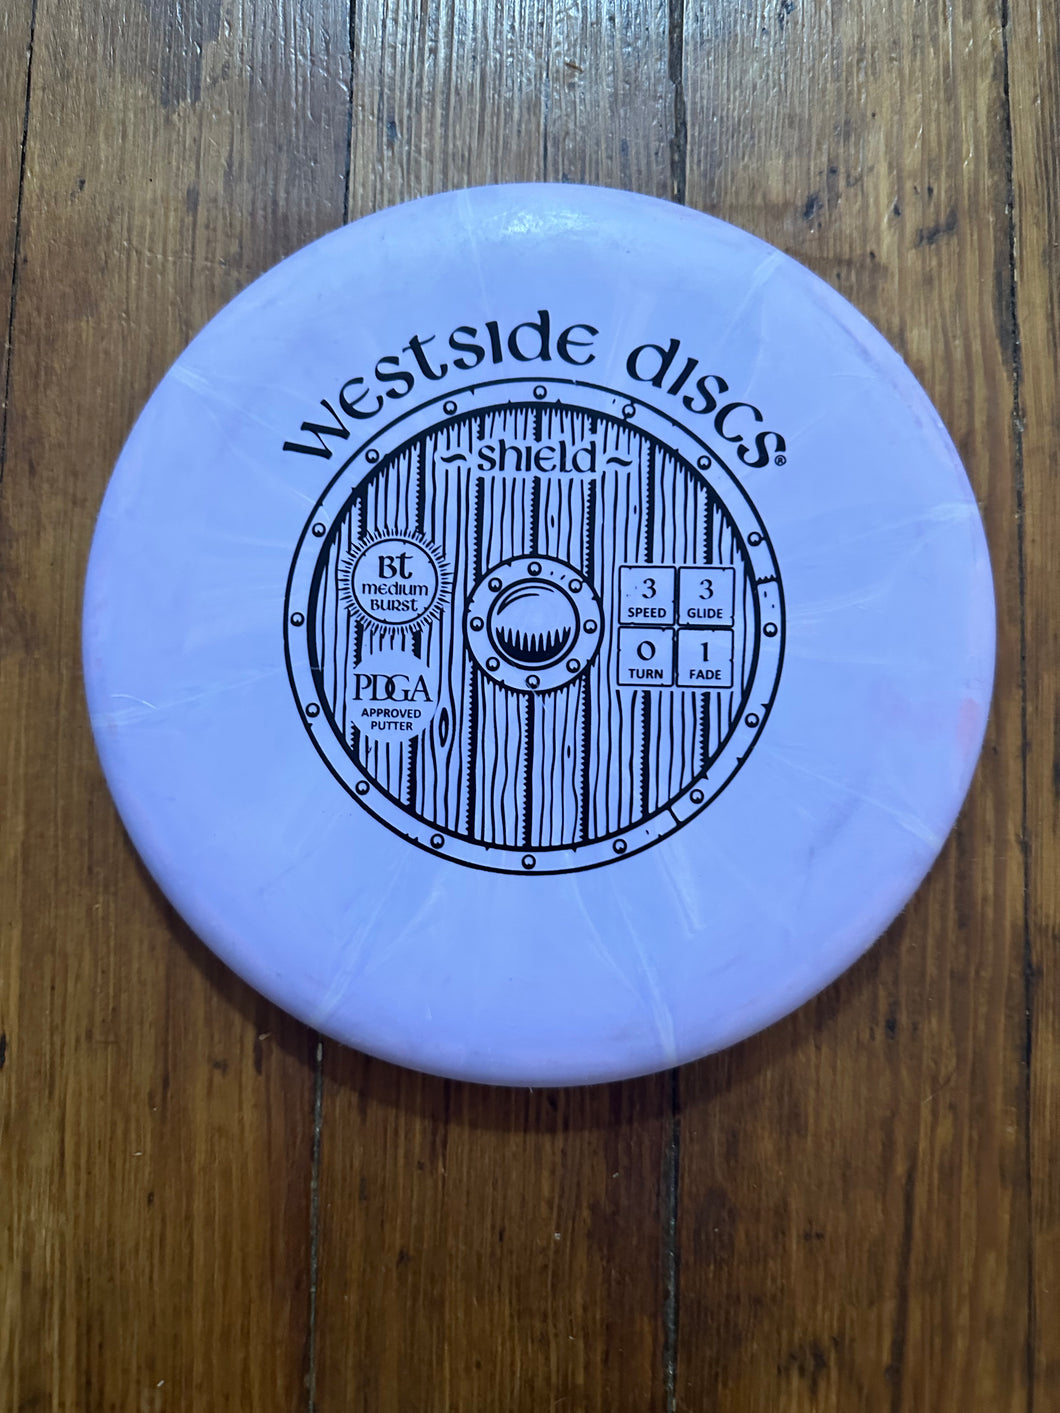 Westside discs Shield Putter purple 173g